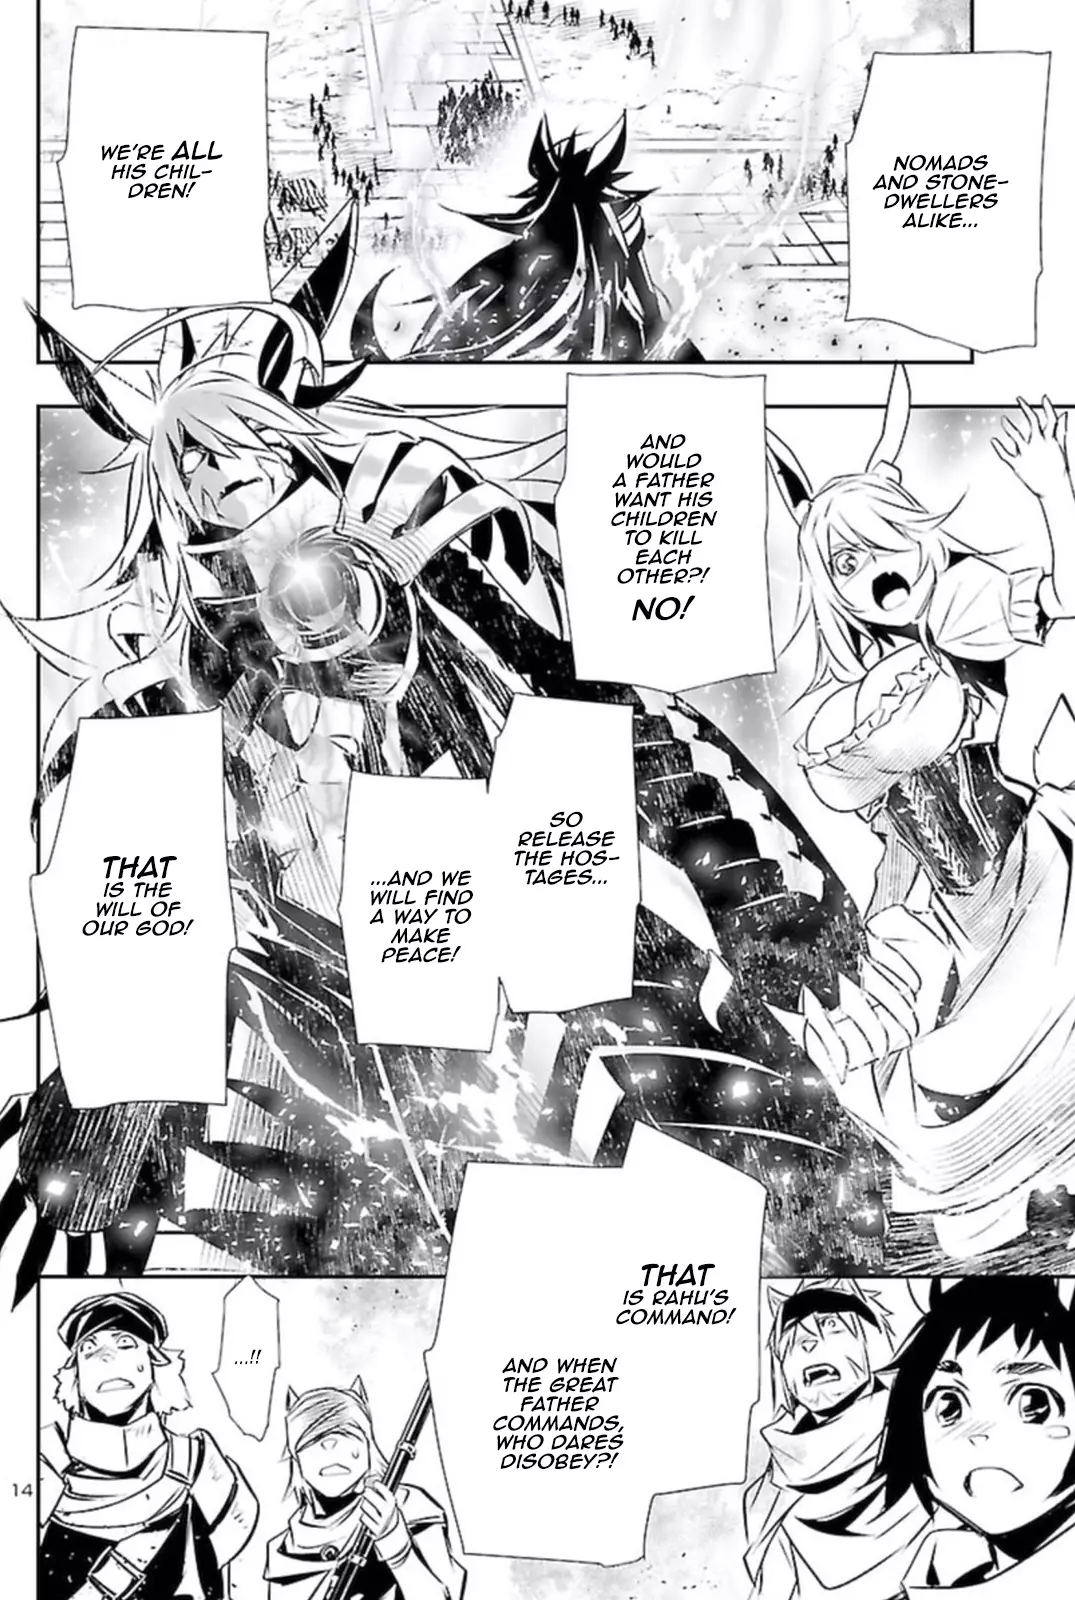 Shinju no Nectar - 63 page 12-42508cd8